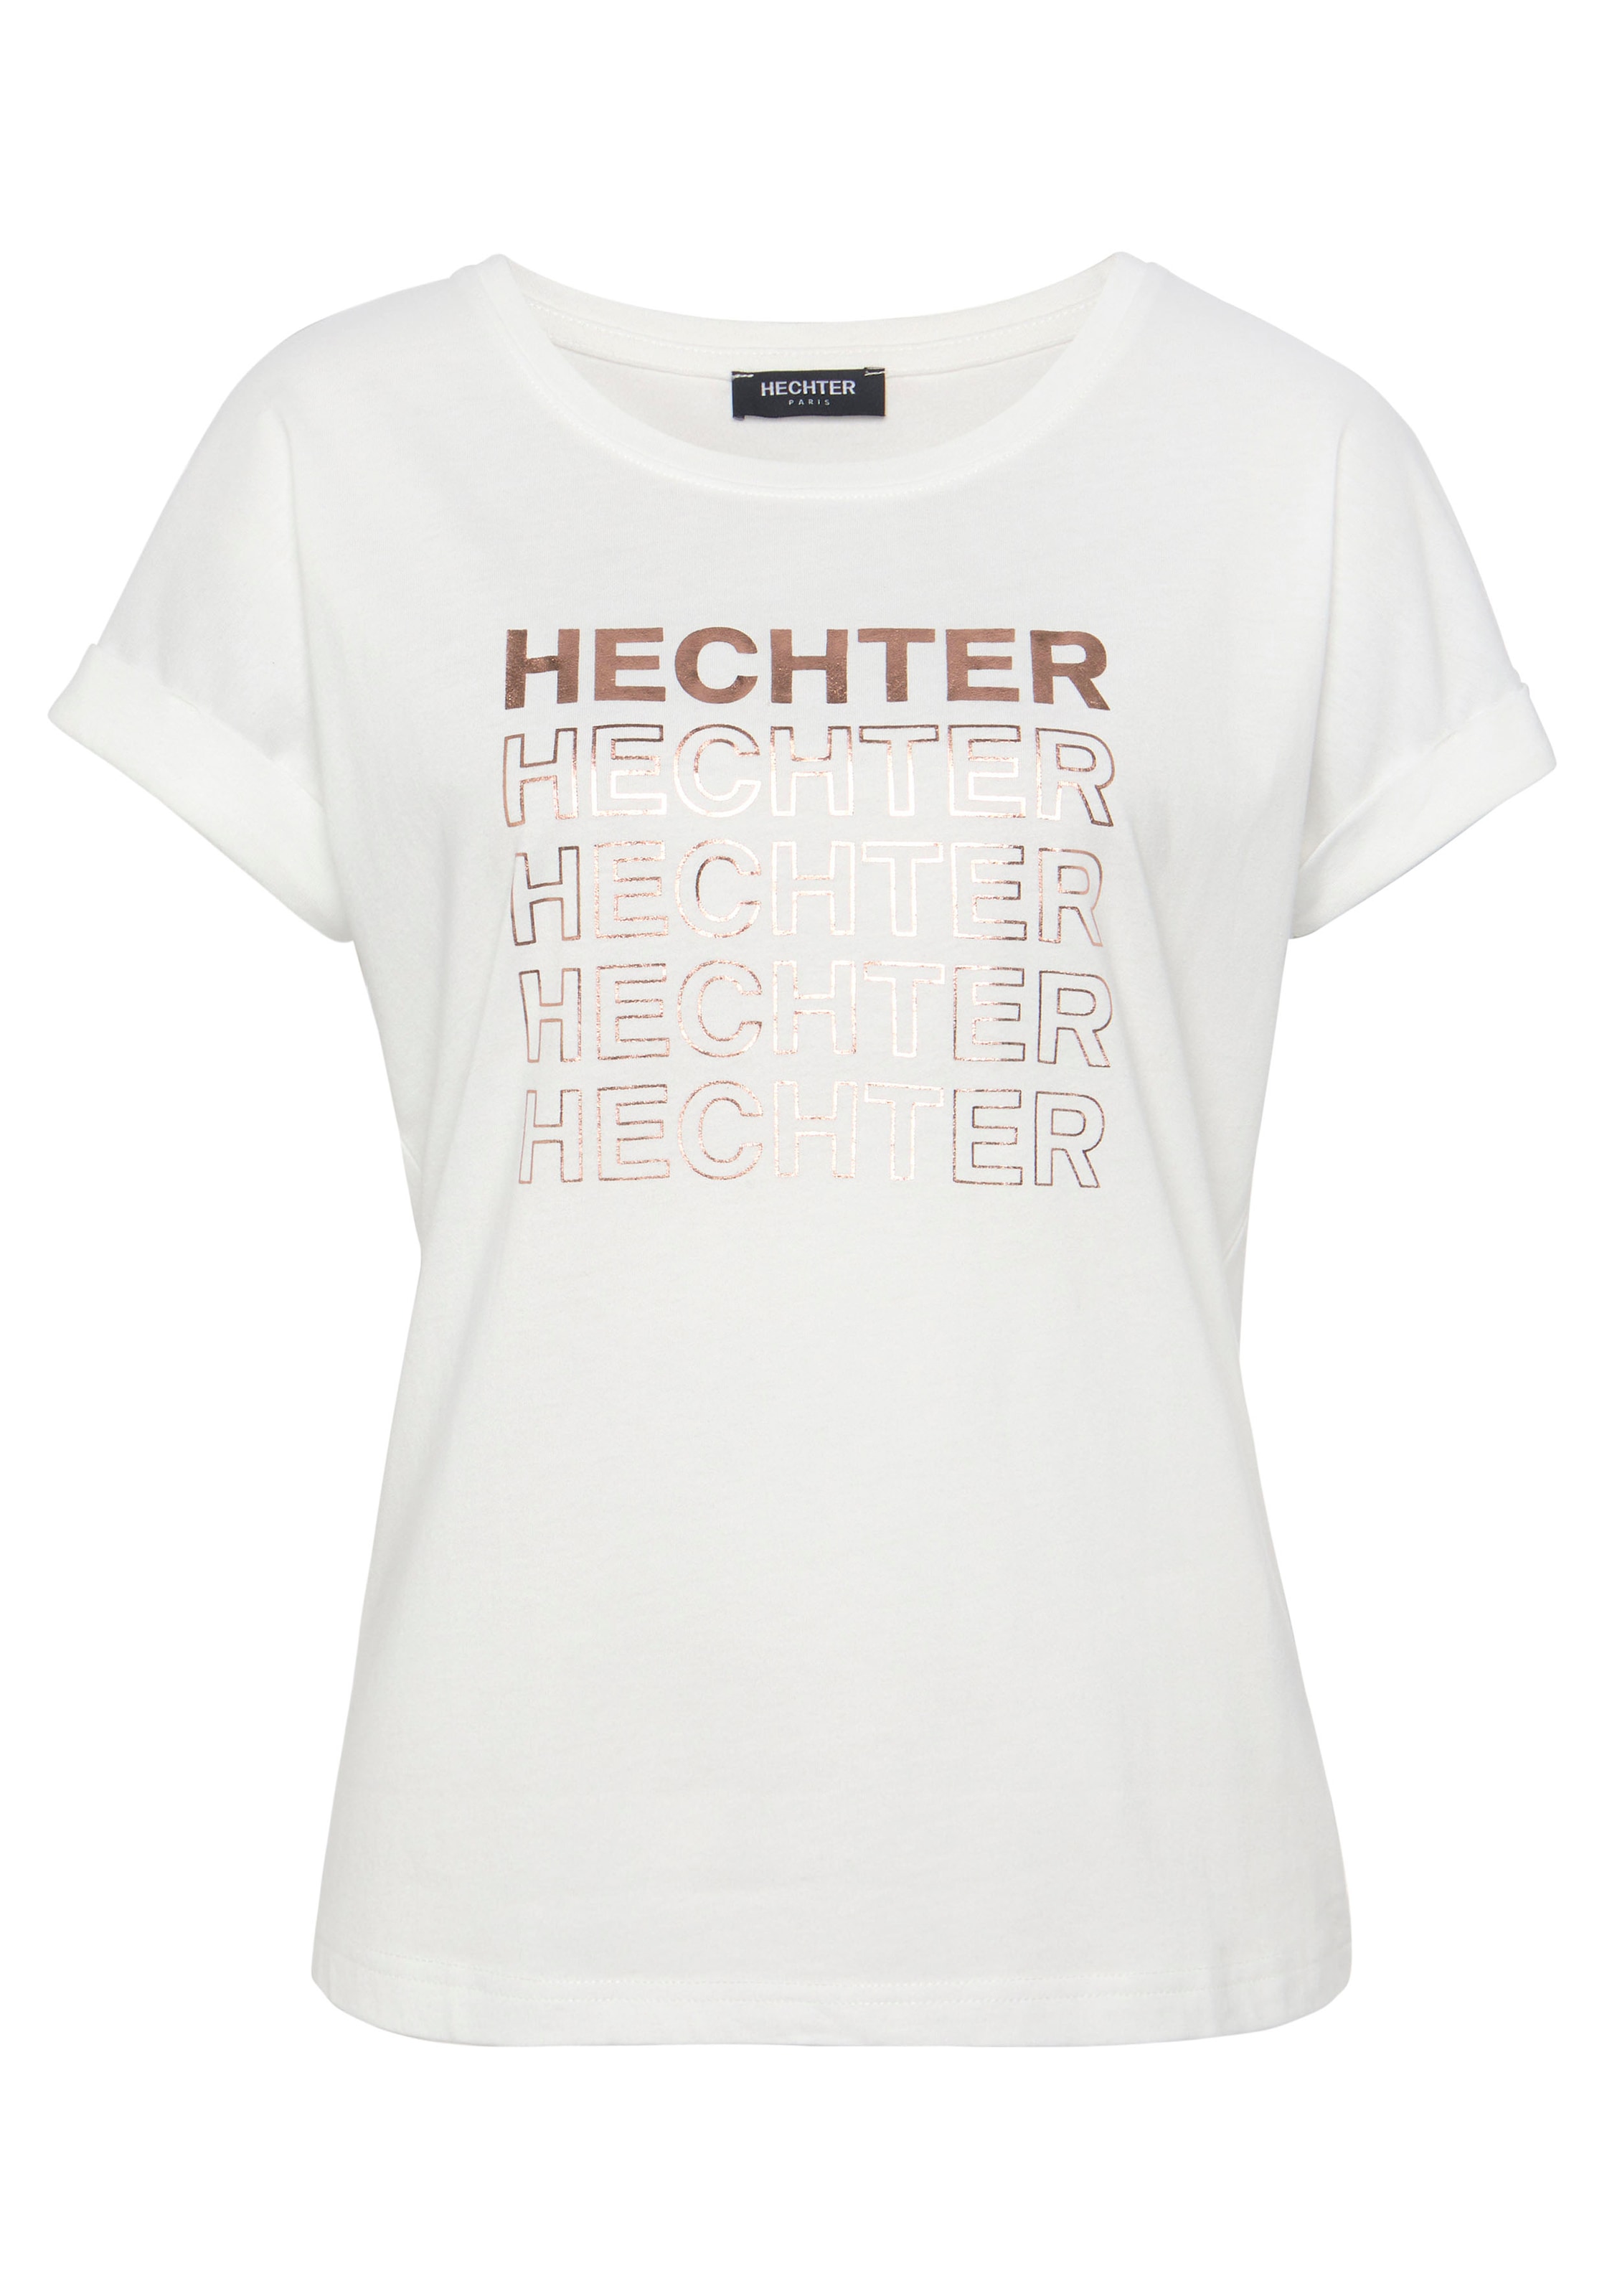 HECHTER PARIS T-Shirt, mit OTTO bestellen bei Markendruck